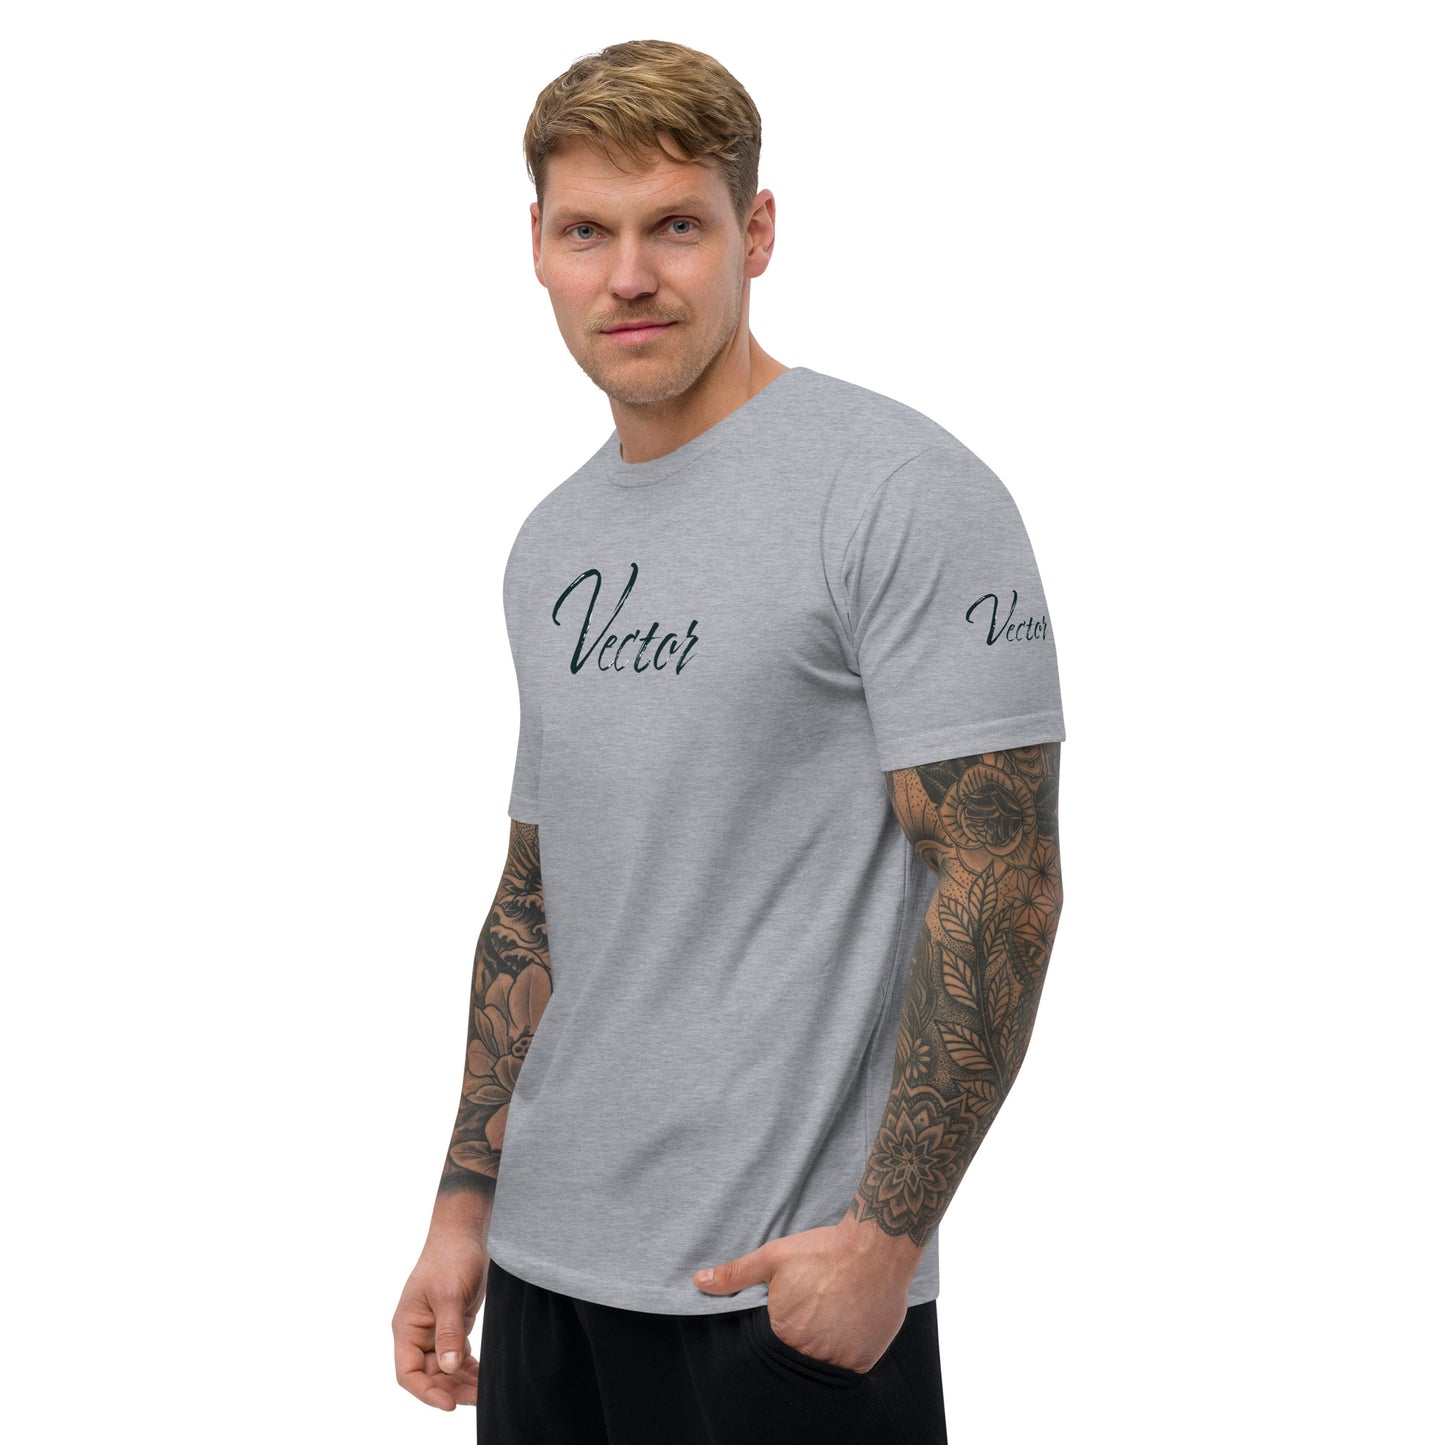 Vector VI 954 Short Sleeve T-shirt